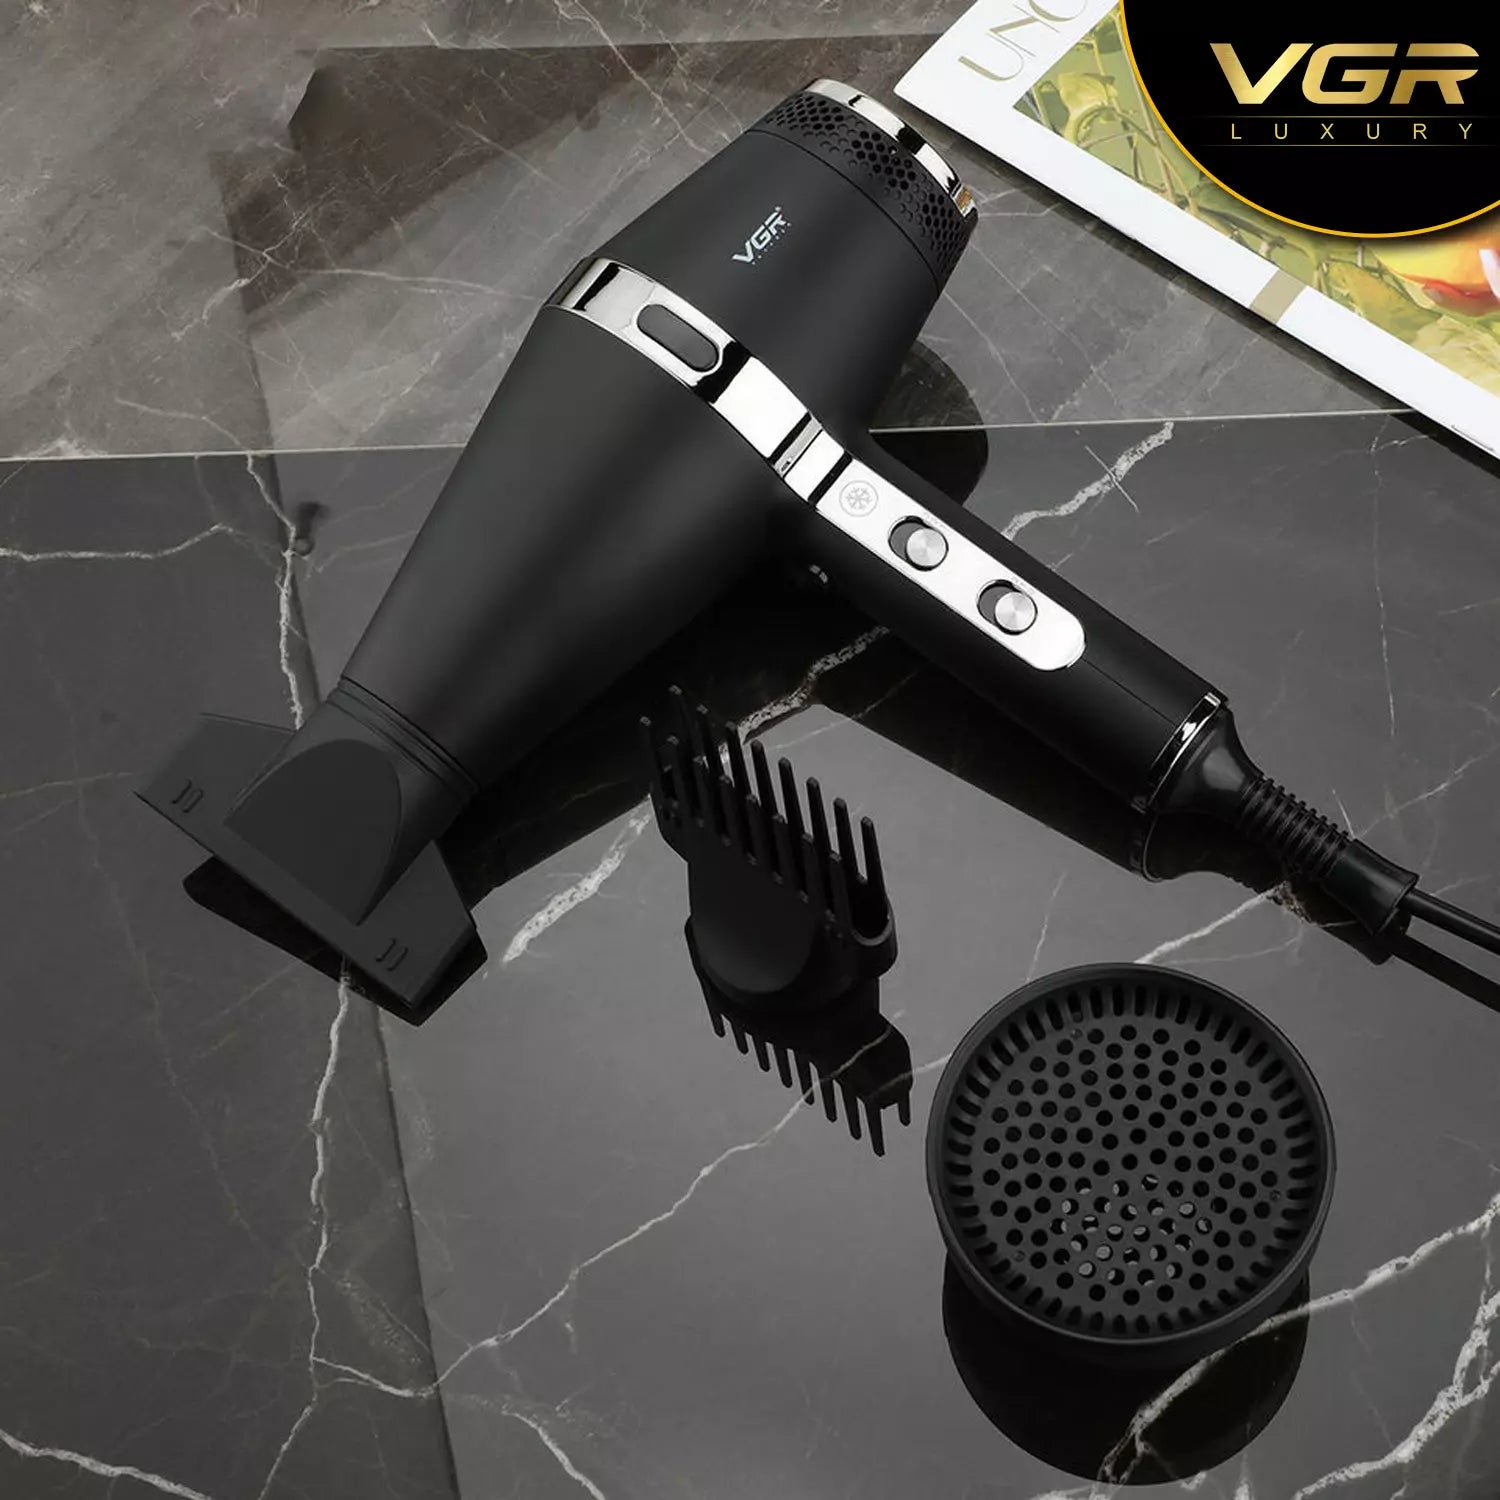 VGR V-451 Hair Dryer For Unisex, Black